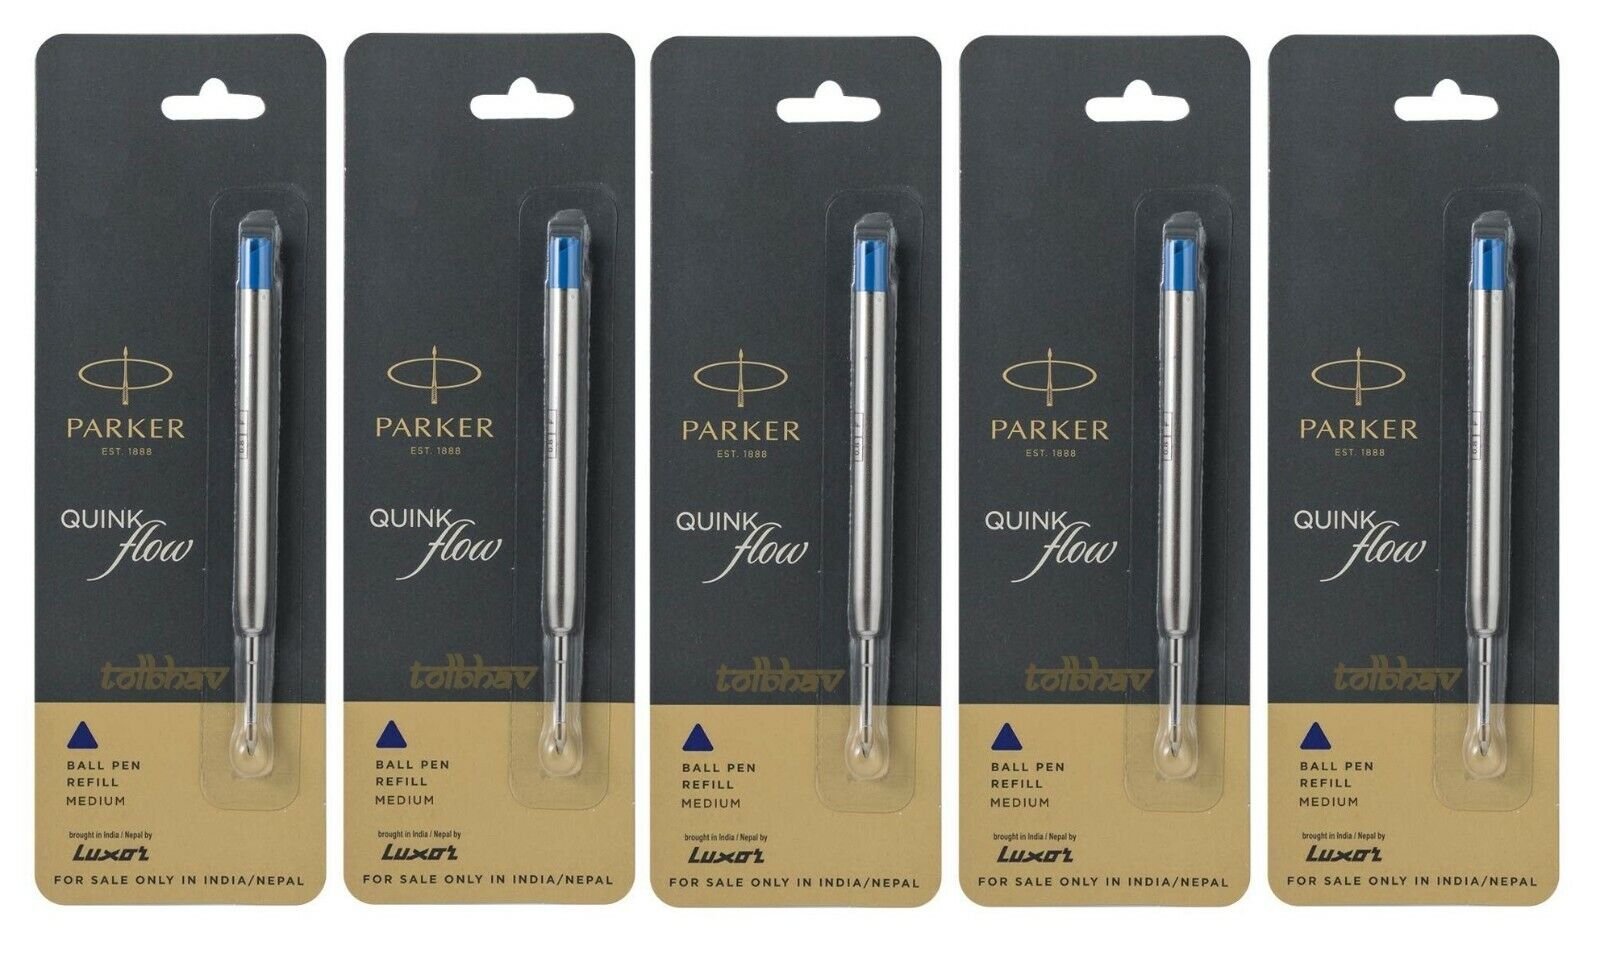 5 X Parker Quink Flow Ball Point Pen BP Refill Refills Blue Ink Medium Nib New PARKER 9000017416 - фотография #2